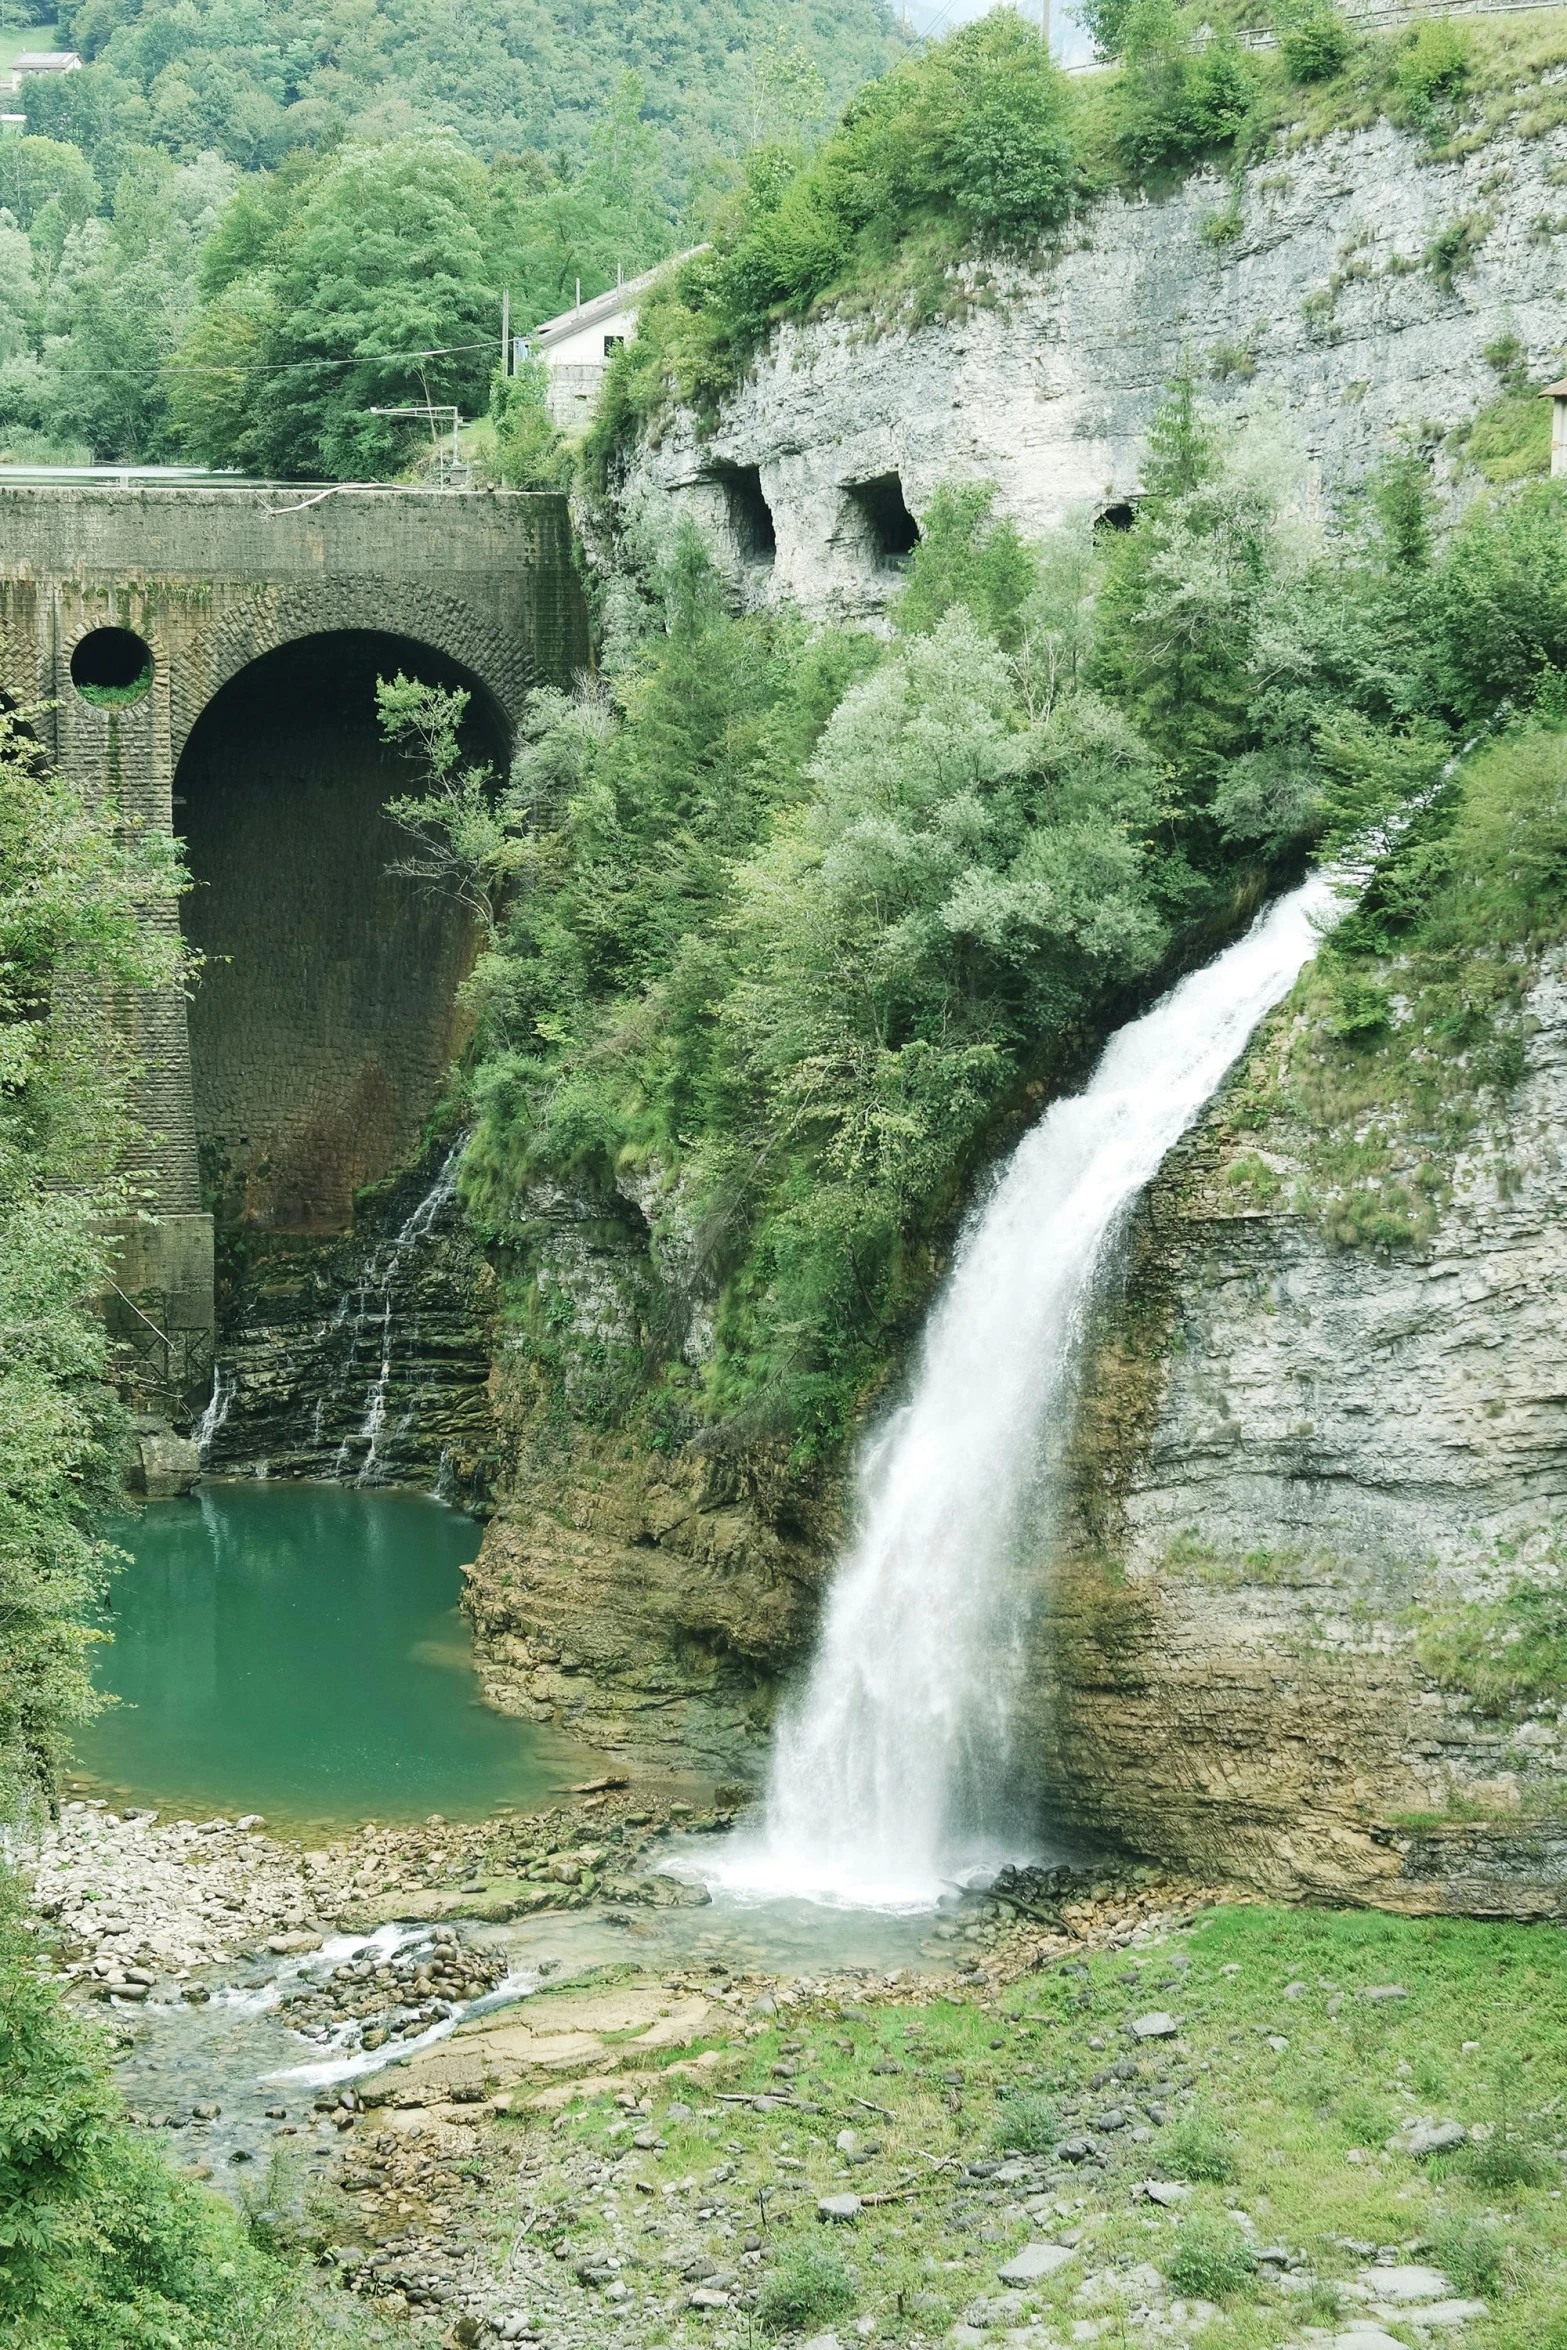 waterfall and bridge in a lush green area near water